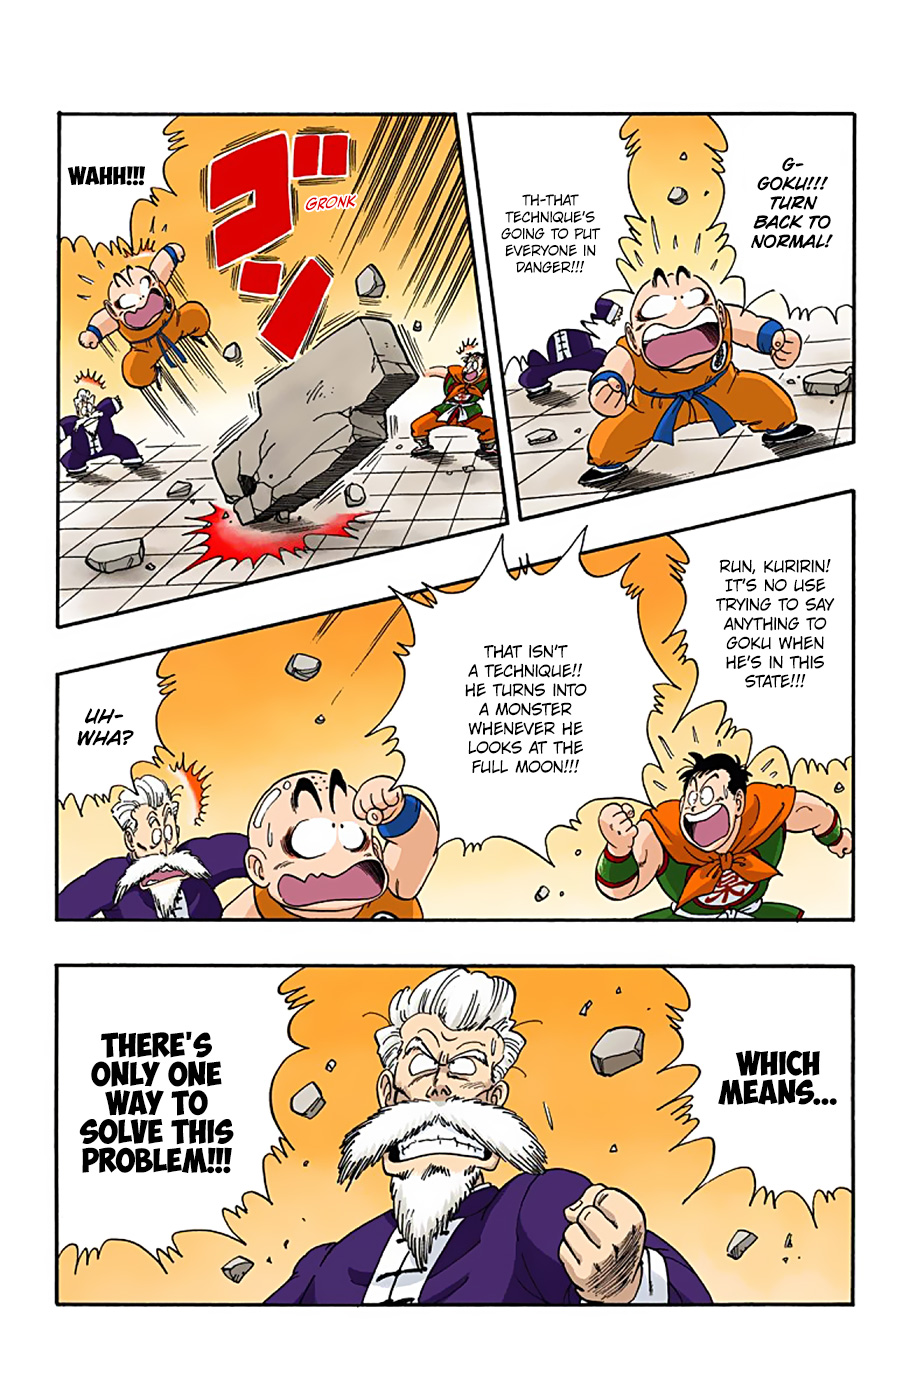 Dragon Ball Full Color Edition Vol. 4 Ch. 51 The Tenkaichi Budōkai in Chaos!!